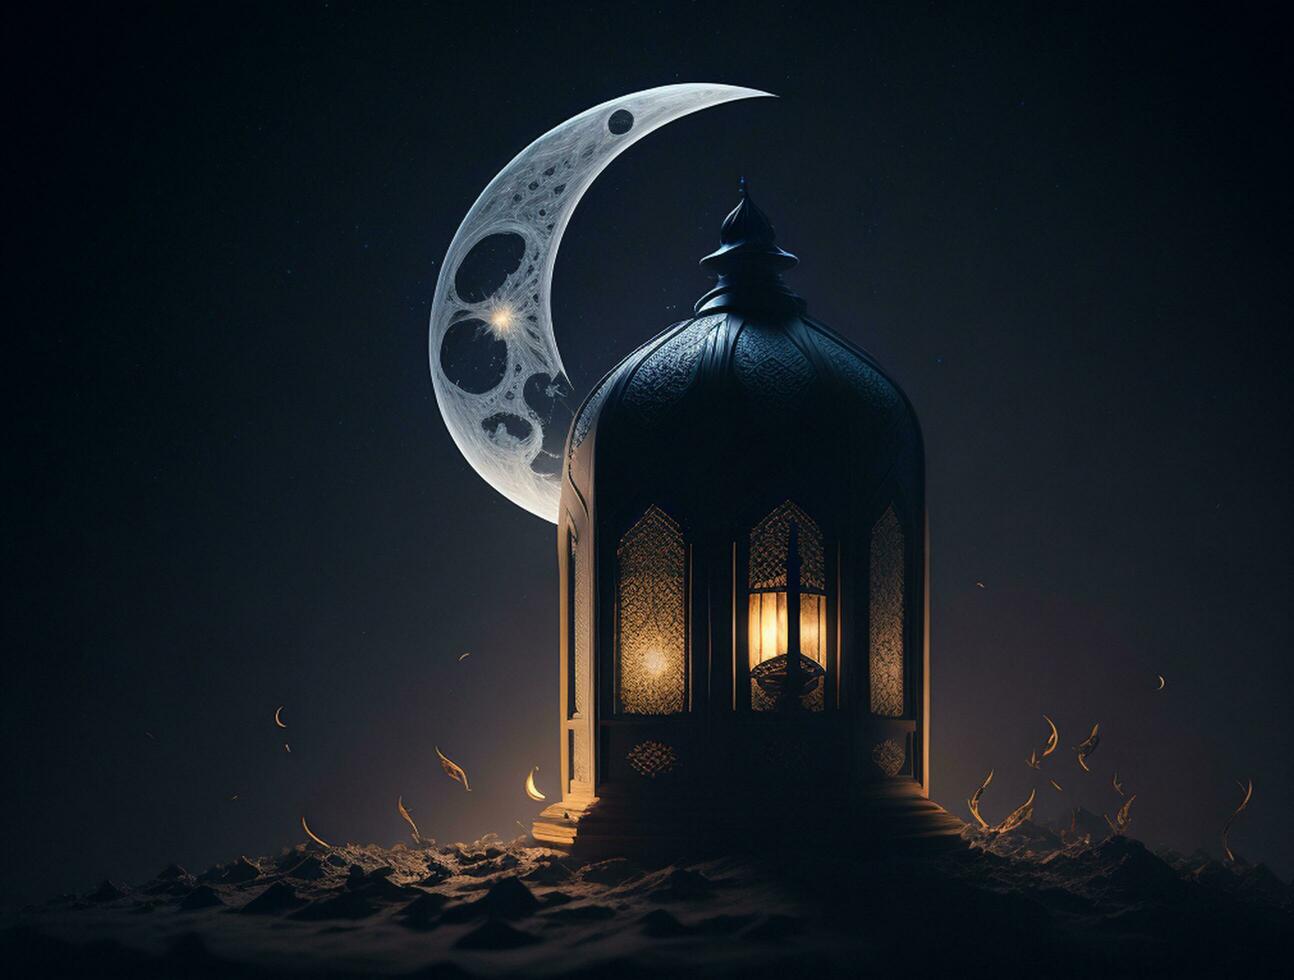 Zier Arabisch Laterne mit Verbrennung Kerze glühend beim Nacht. Muslim heilig Monat Ramadan kareem foto